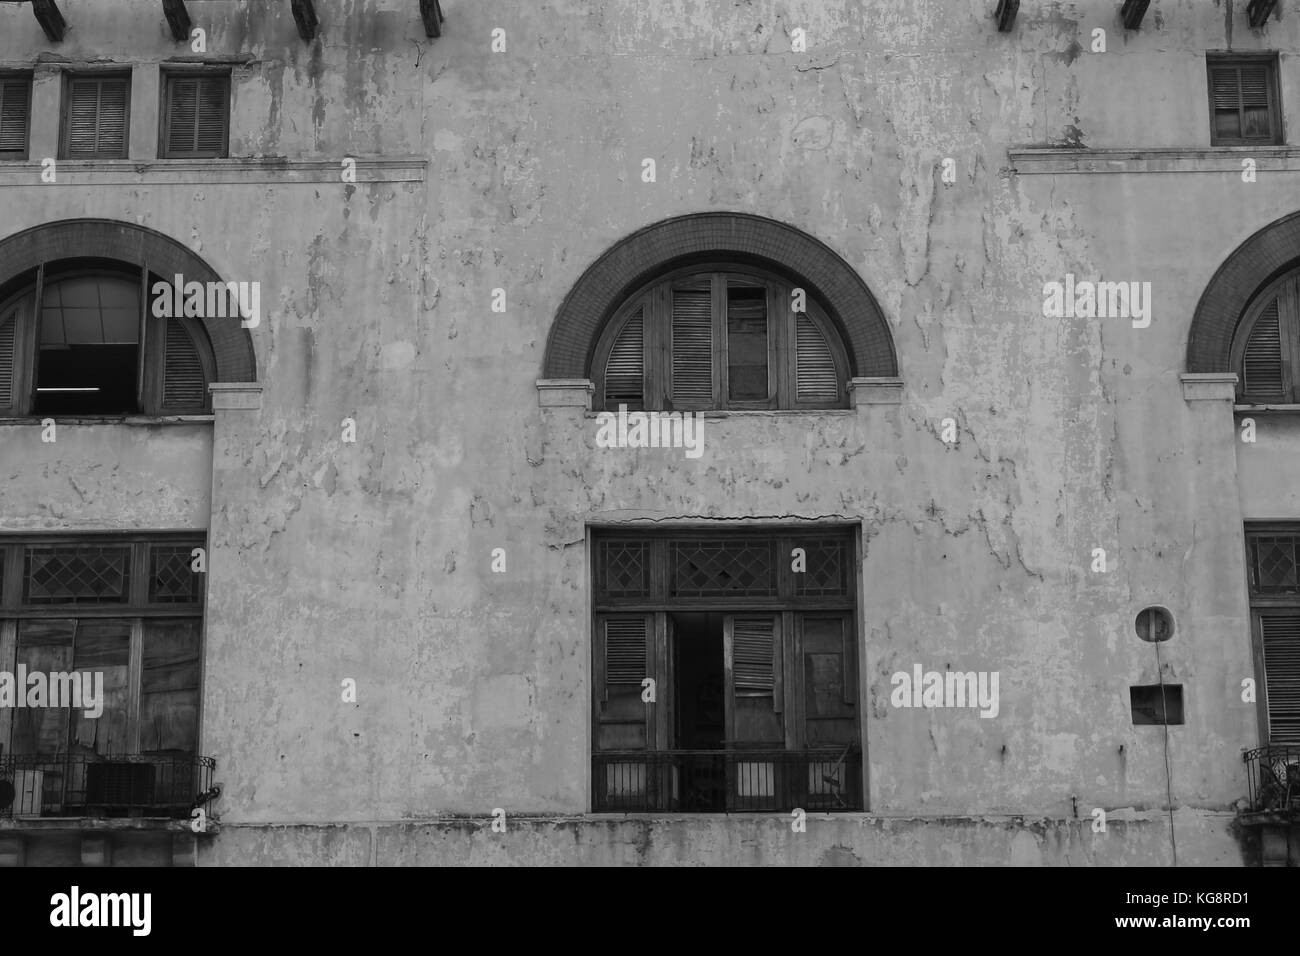 Vieux bâtiment de style espagnol, le ciment, La Havane, Cuba. Les cadres de fenêtres cintrées, volets et portes cassées, ébréchées et peler la peinture. Le noir et blanc Banque D'Images